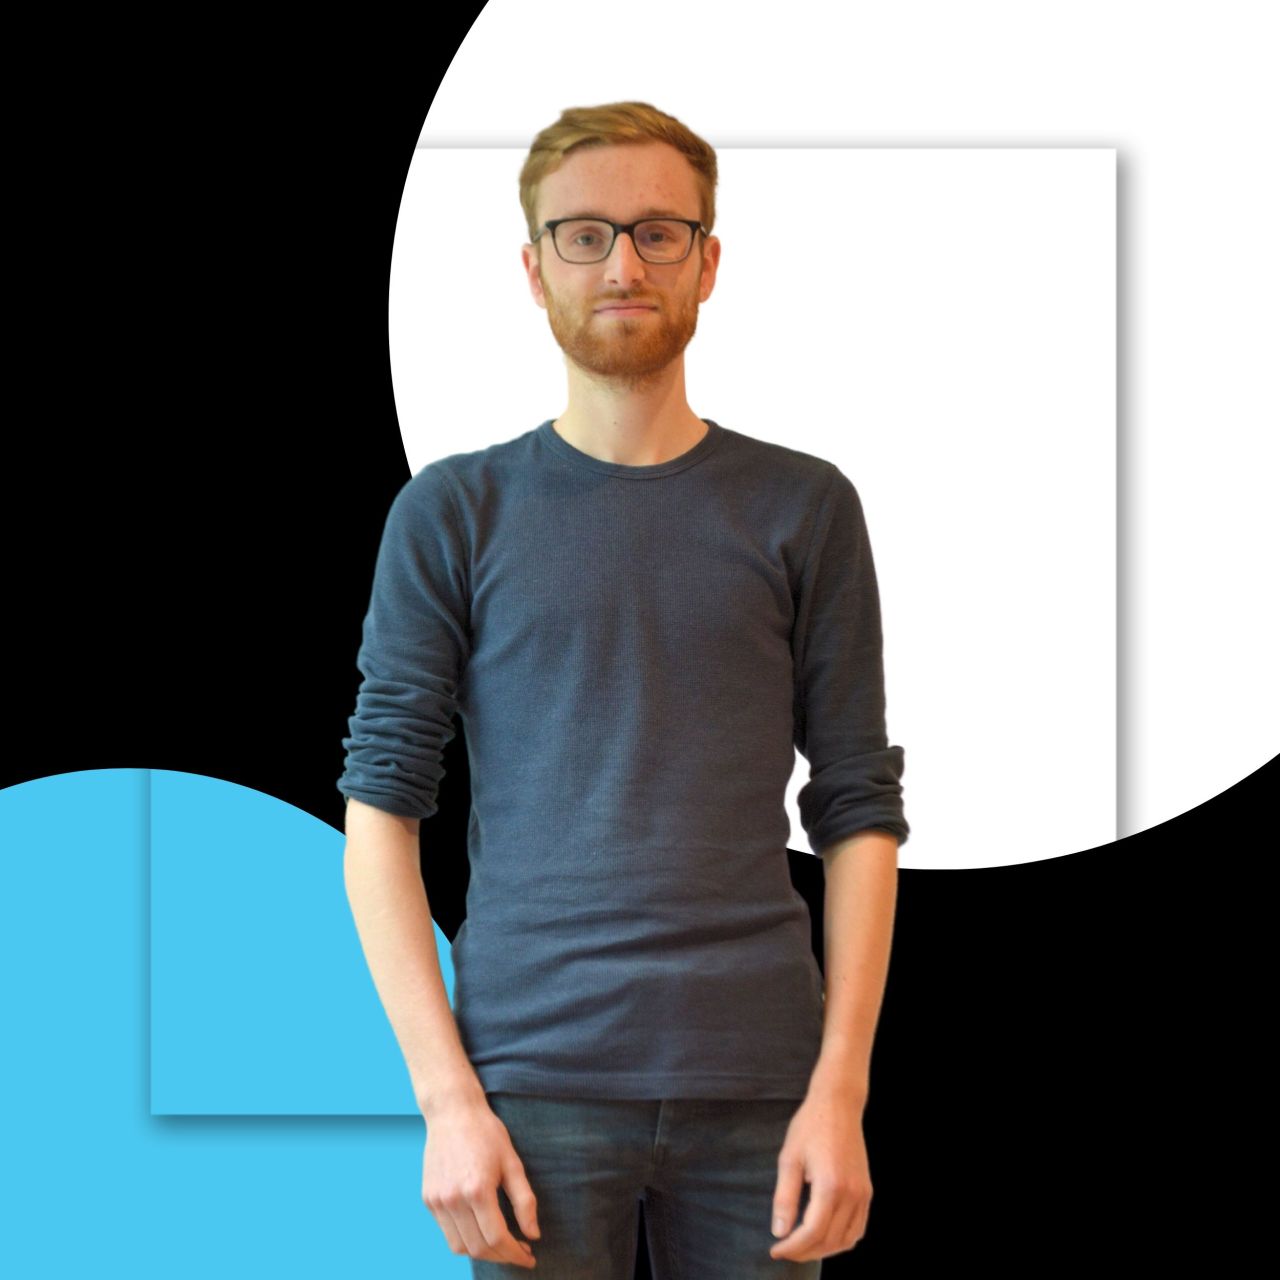 Meet Developer Joost